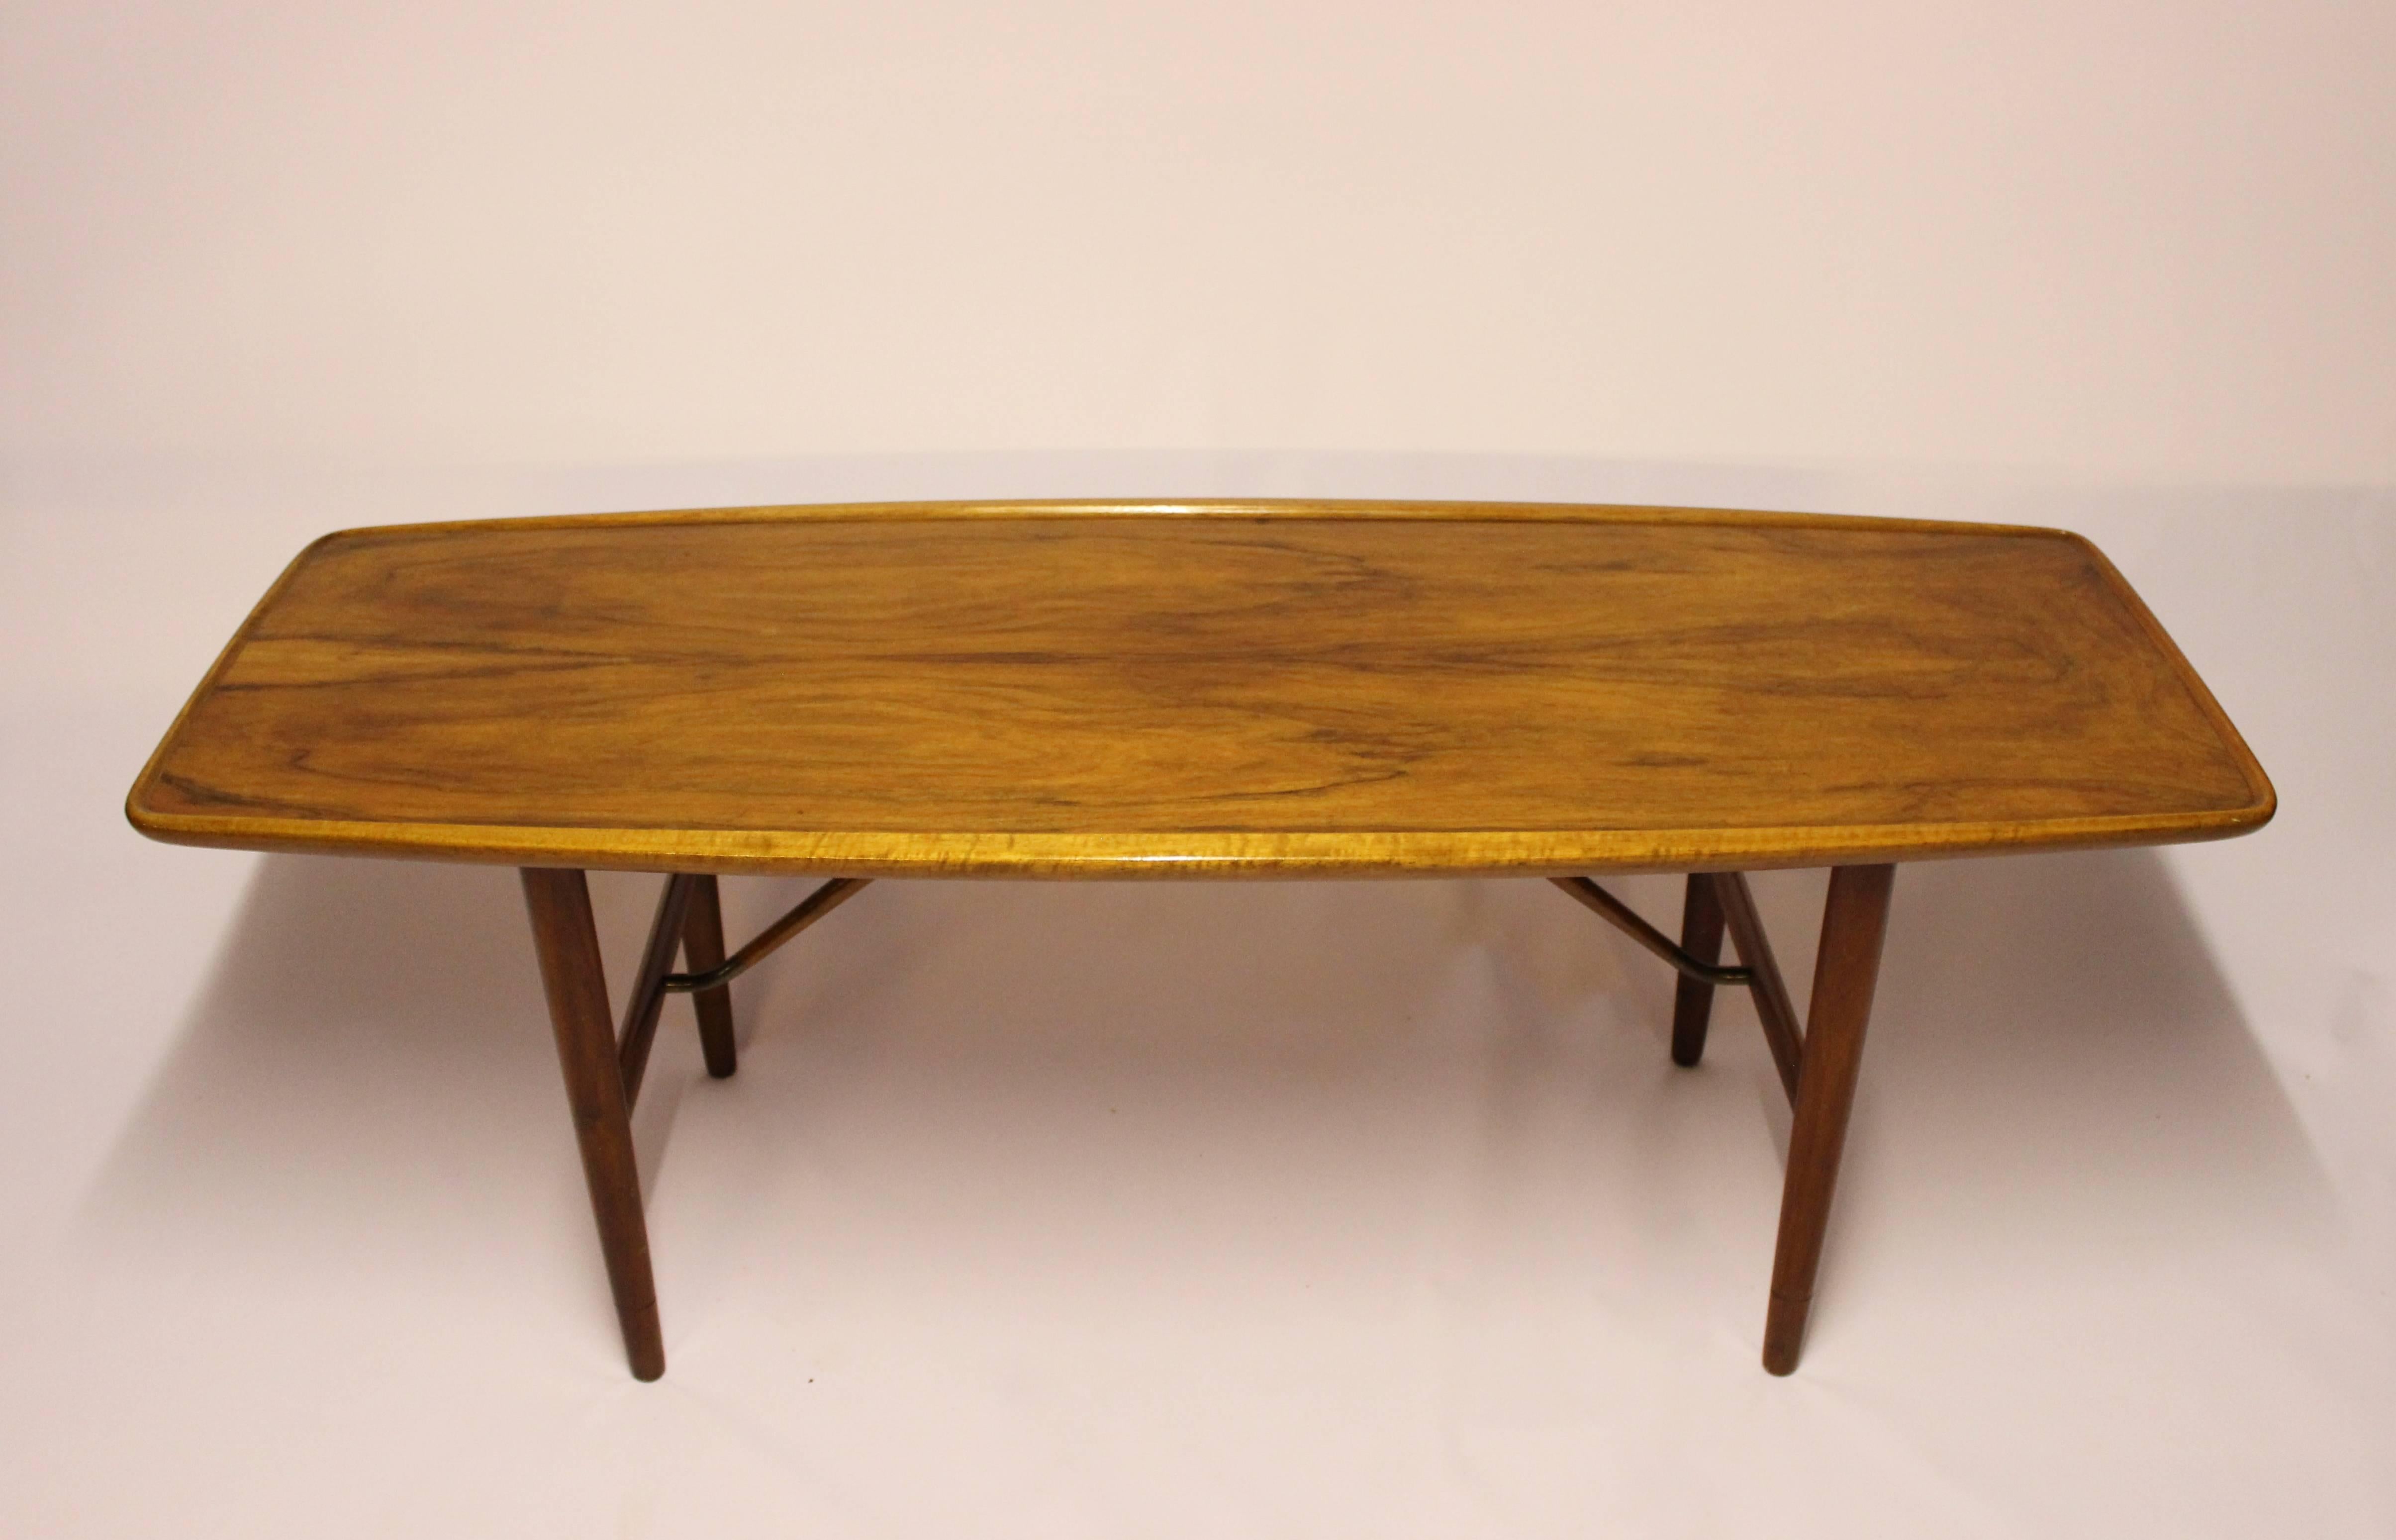 Scandinavian Modern Coffee Table in Walnut Designed by Finn Juhl, 1960s